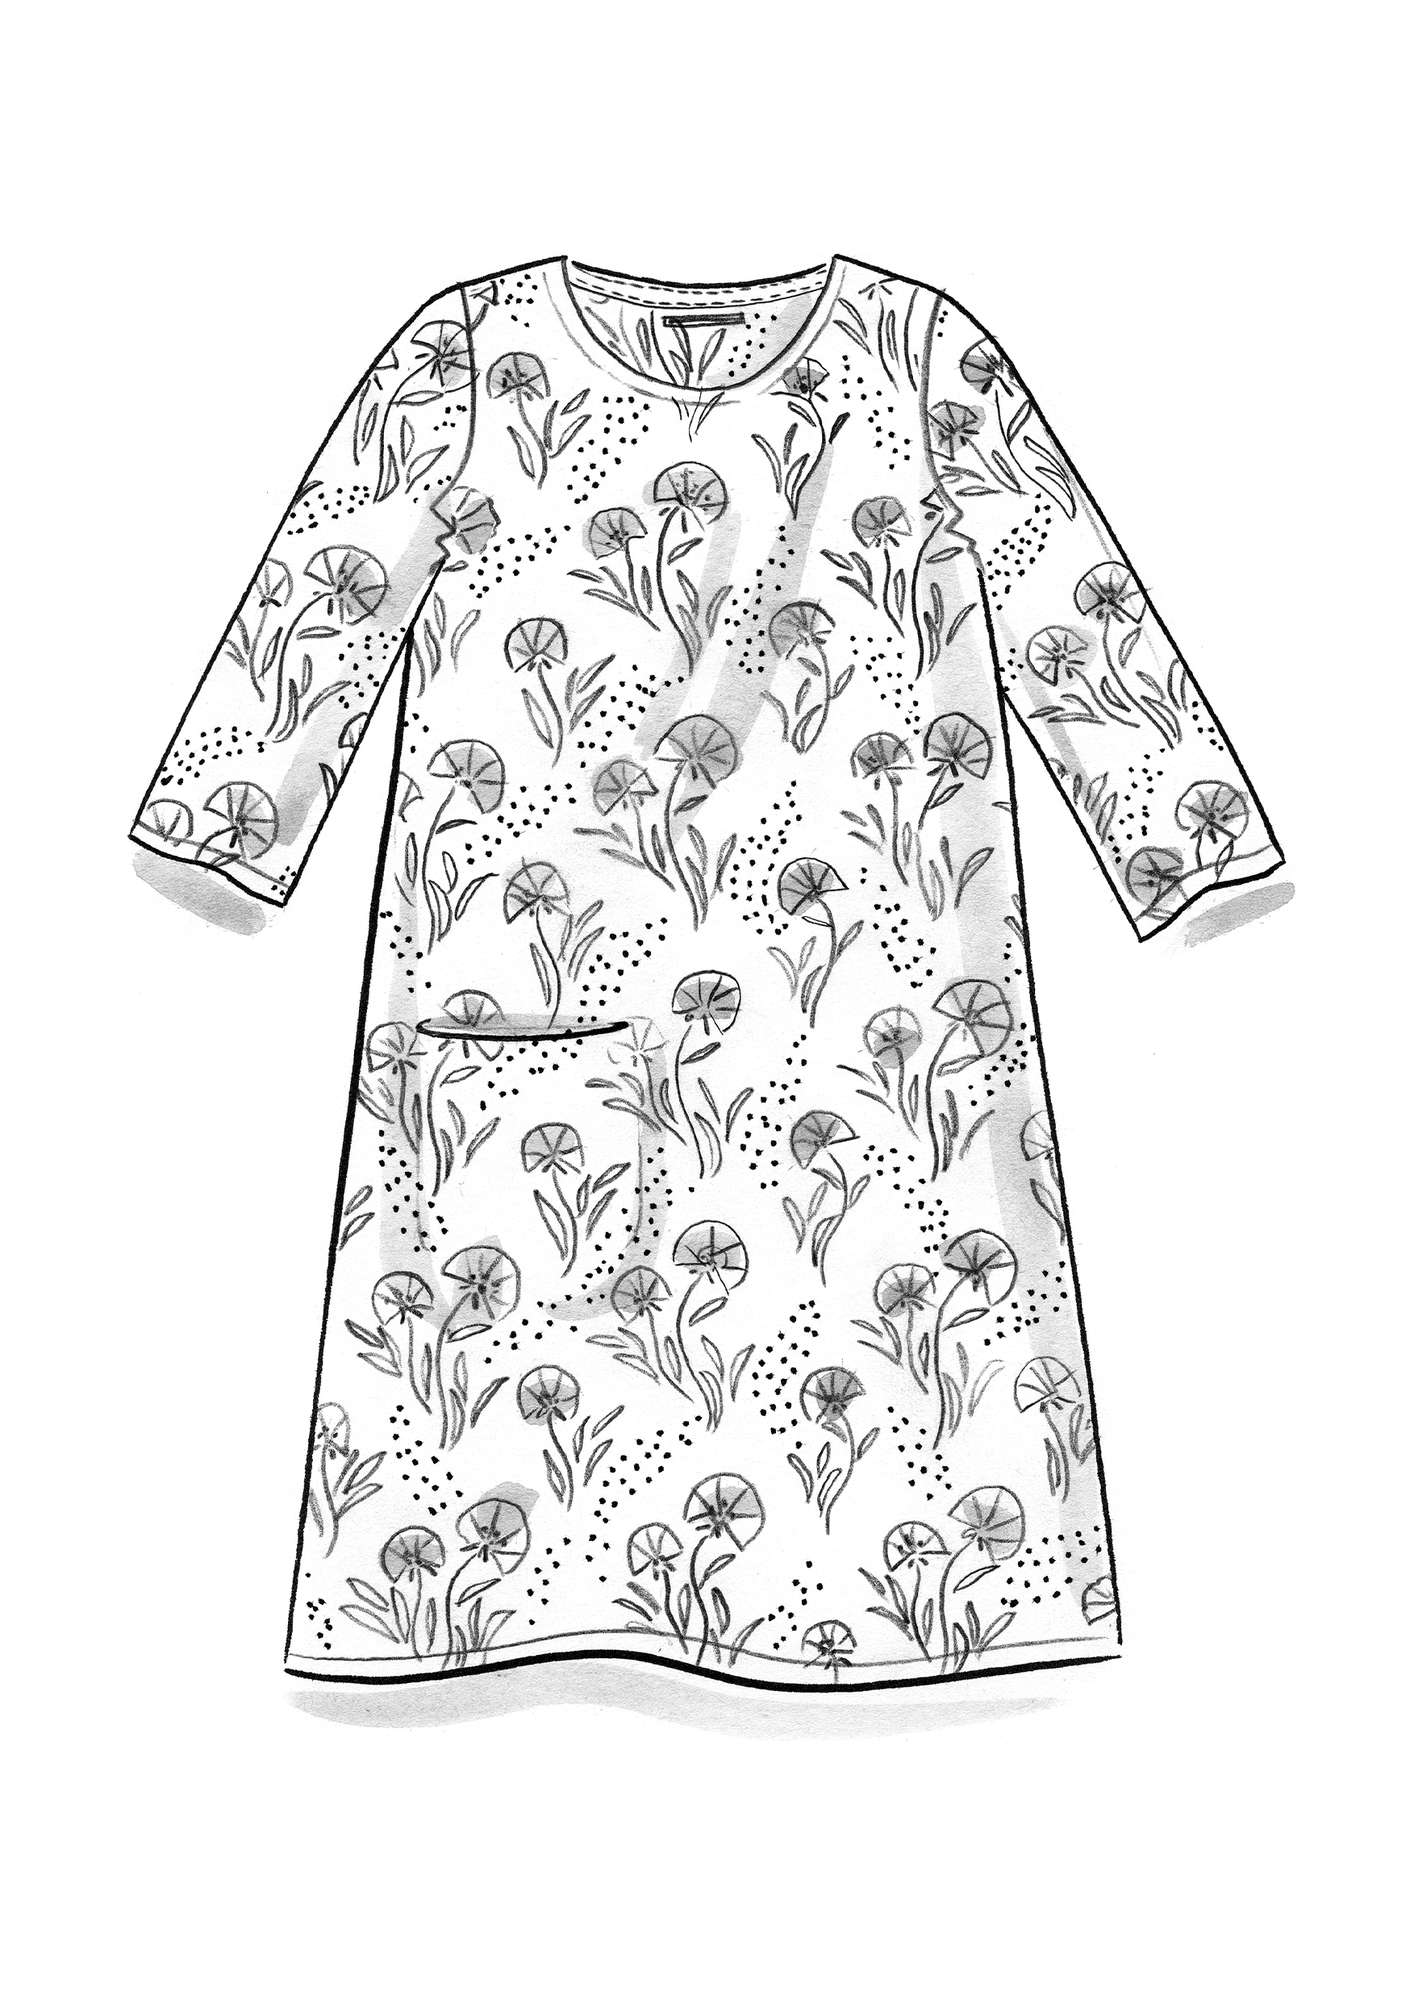 Strikket kjole «Mosippa» i resirkulert bomull gressløk/mønstret